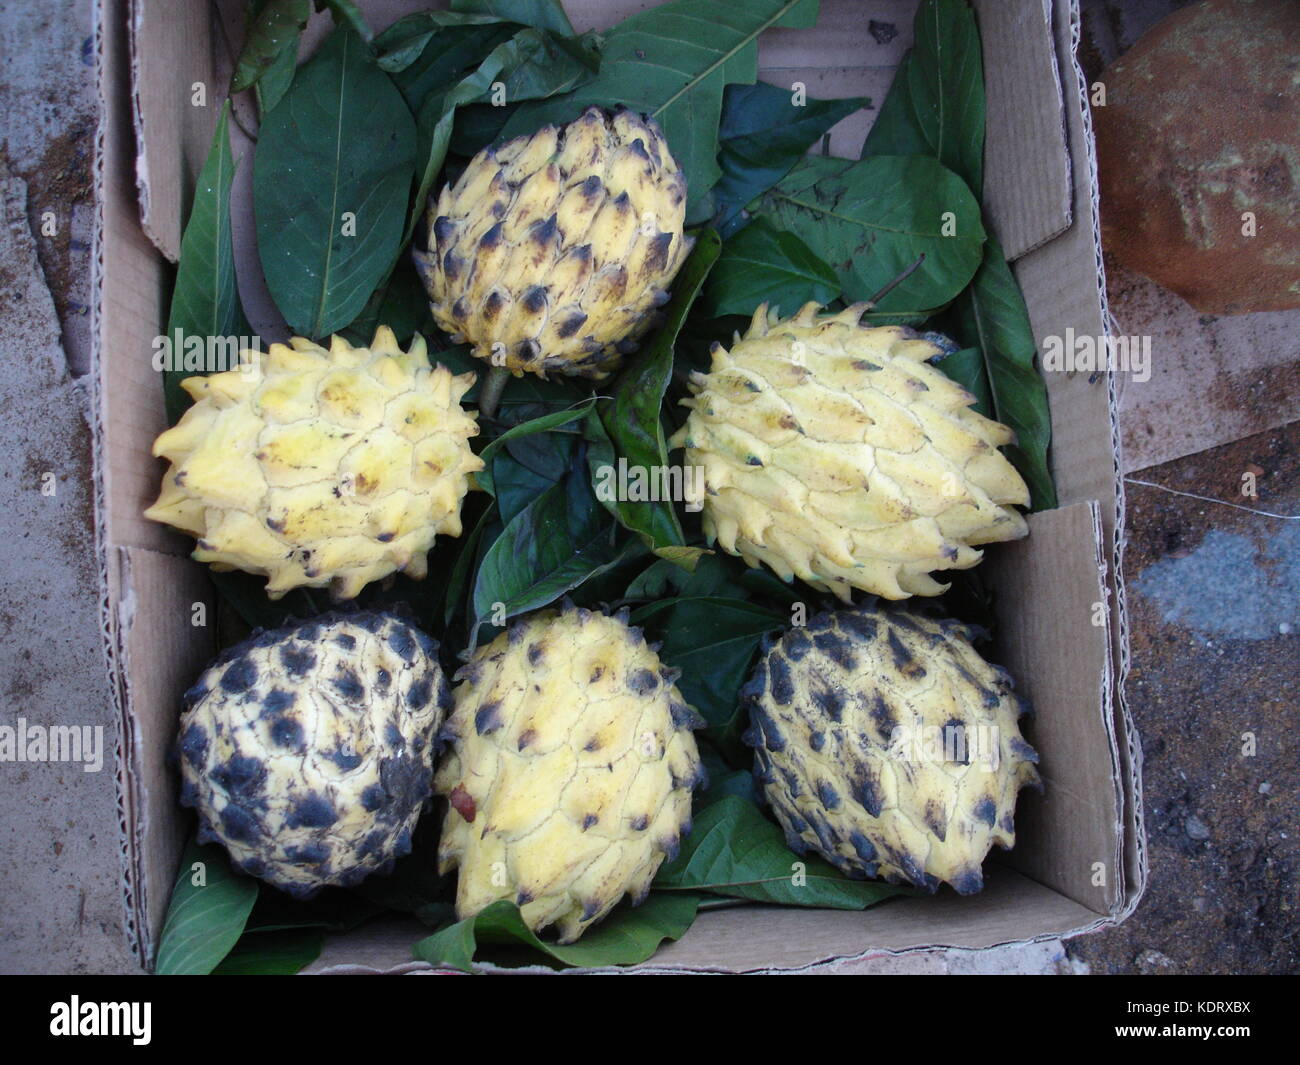 Ver-o-peso market, biriba fruit in carton box Stock Photo